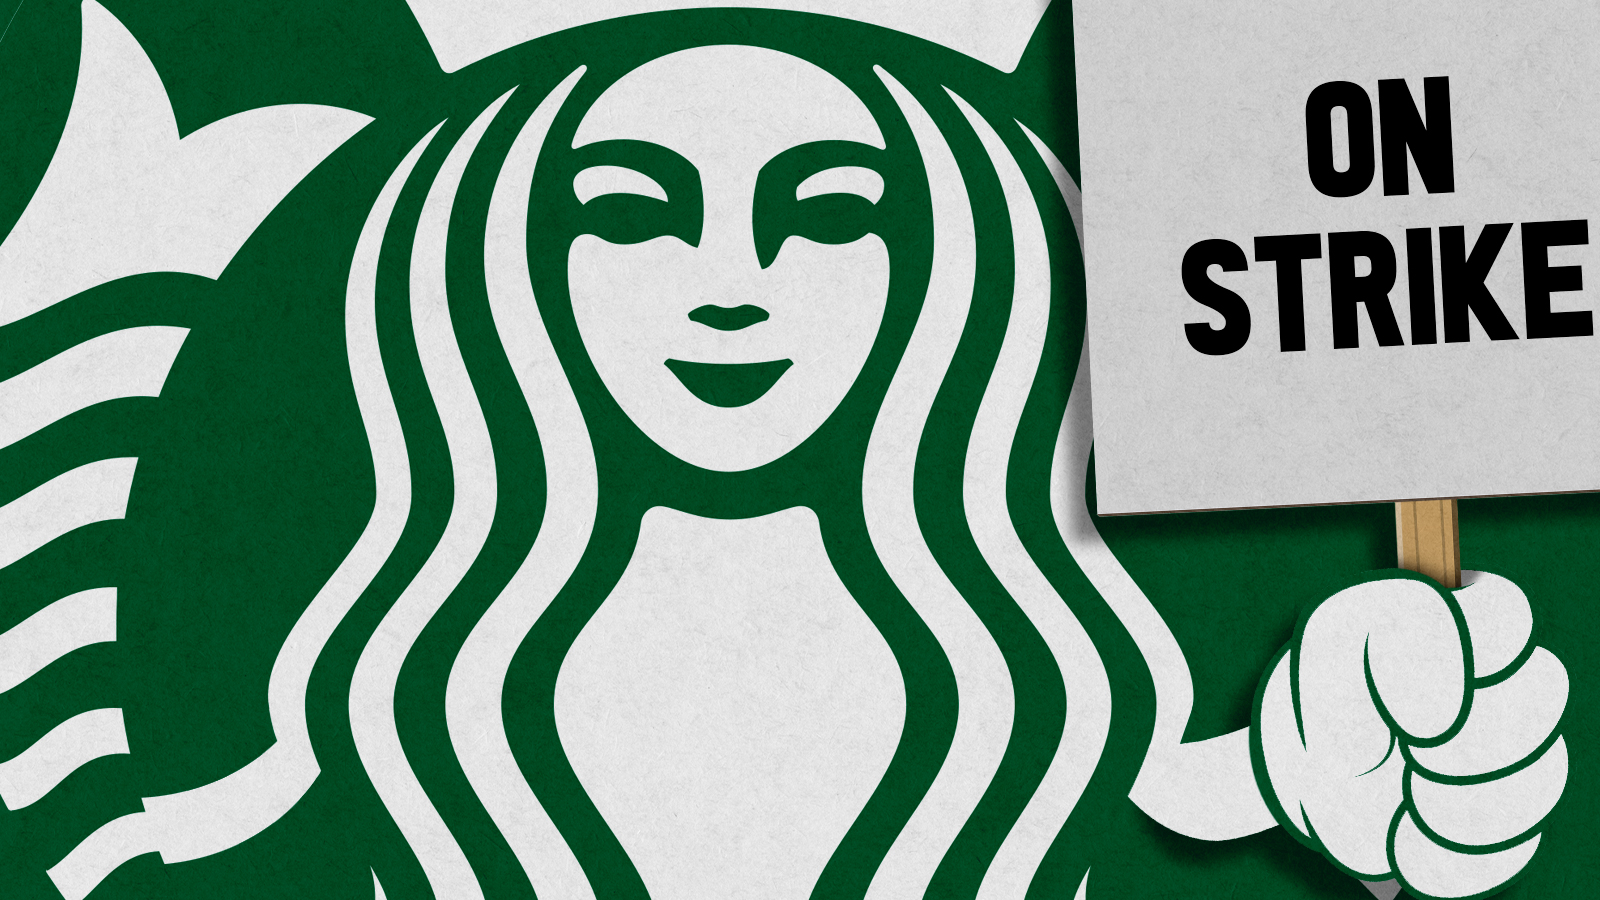 The Starbucks logo.